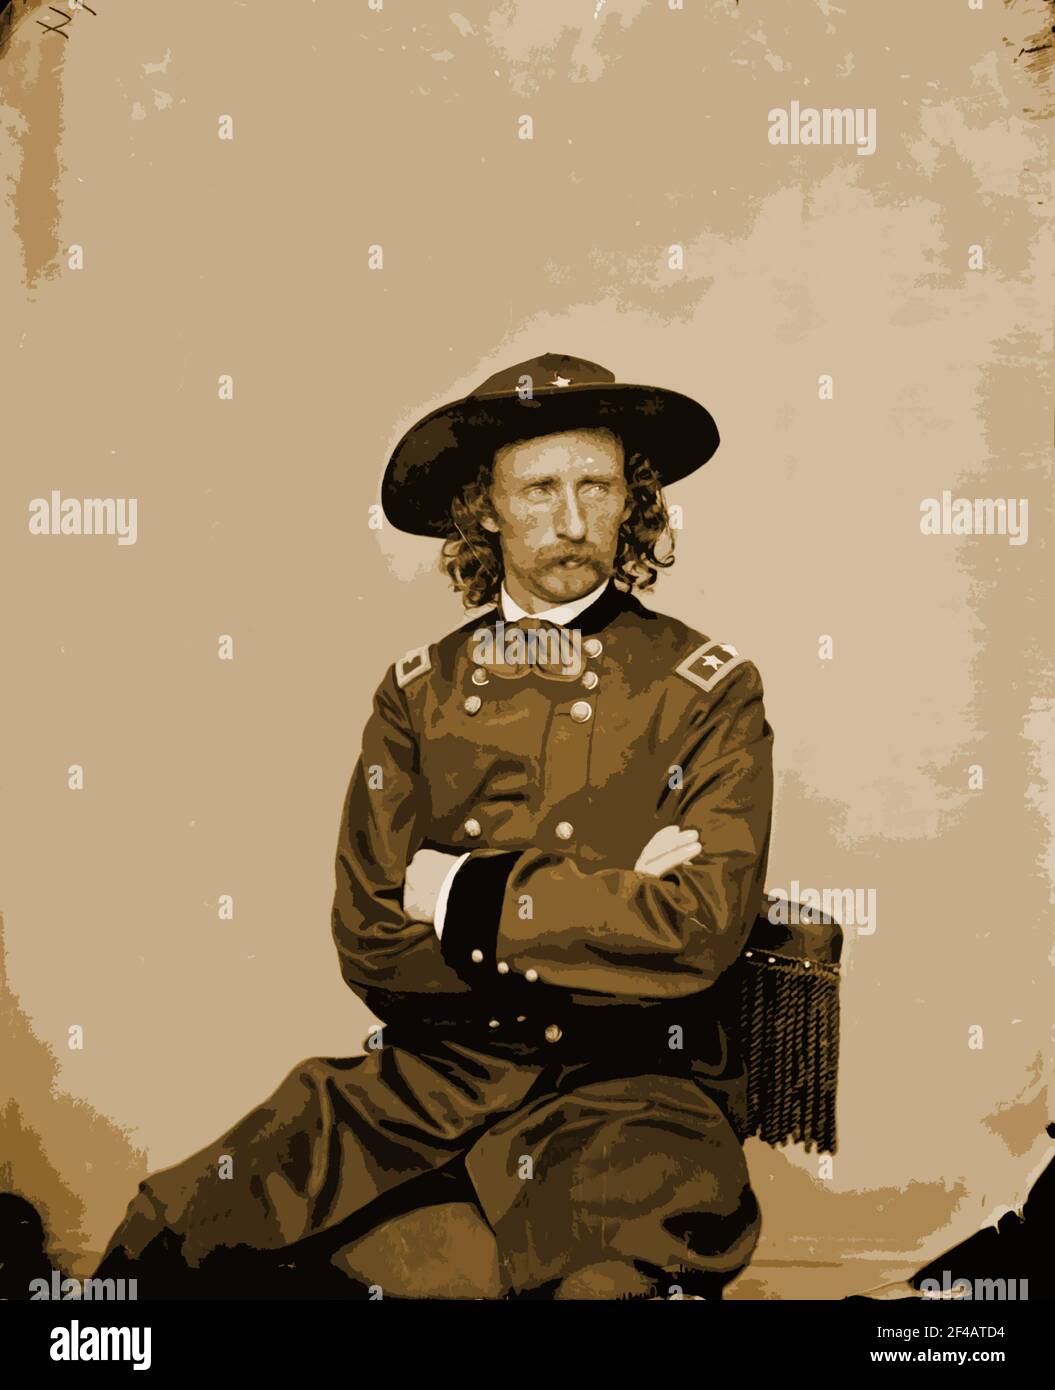 Una fotografia in studio del 1885 del maggiore Custer generale George Armstrong è stata modificata con un filtro Photoshop per effetti speciali. Foto Stock